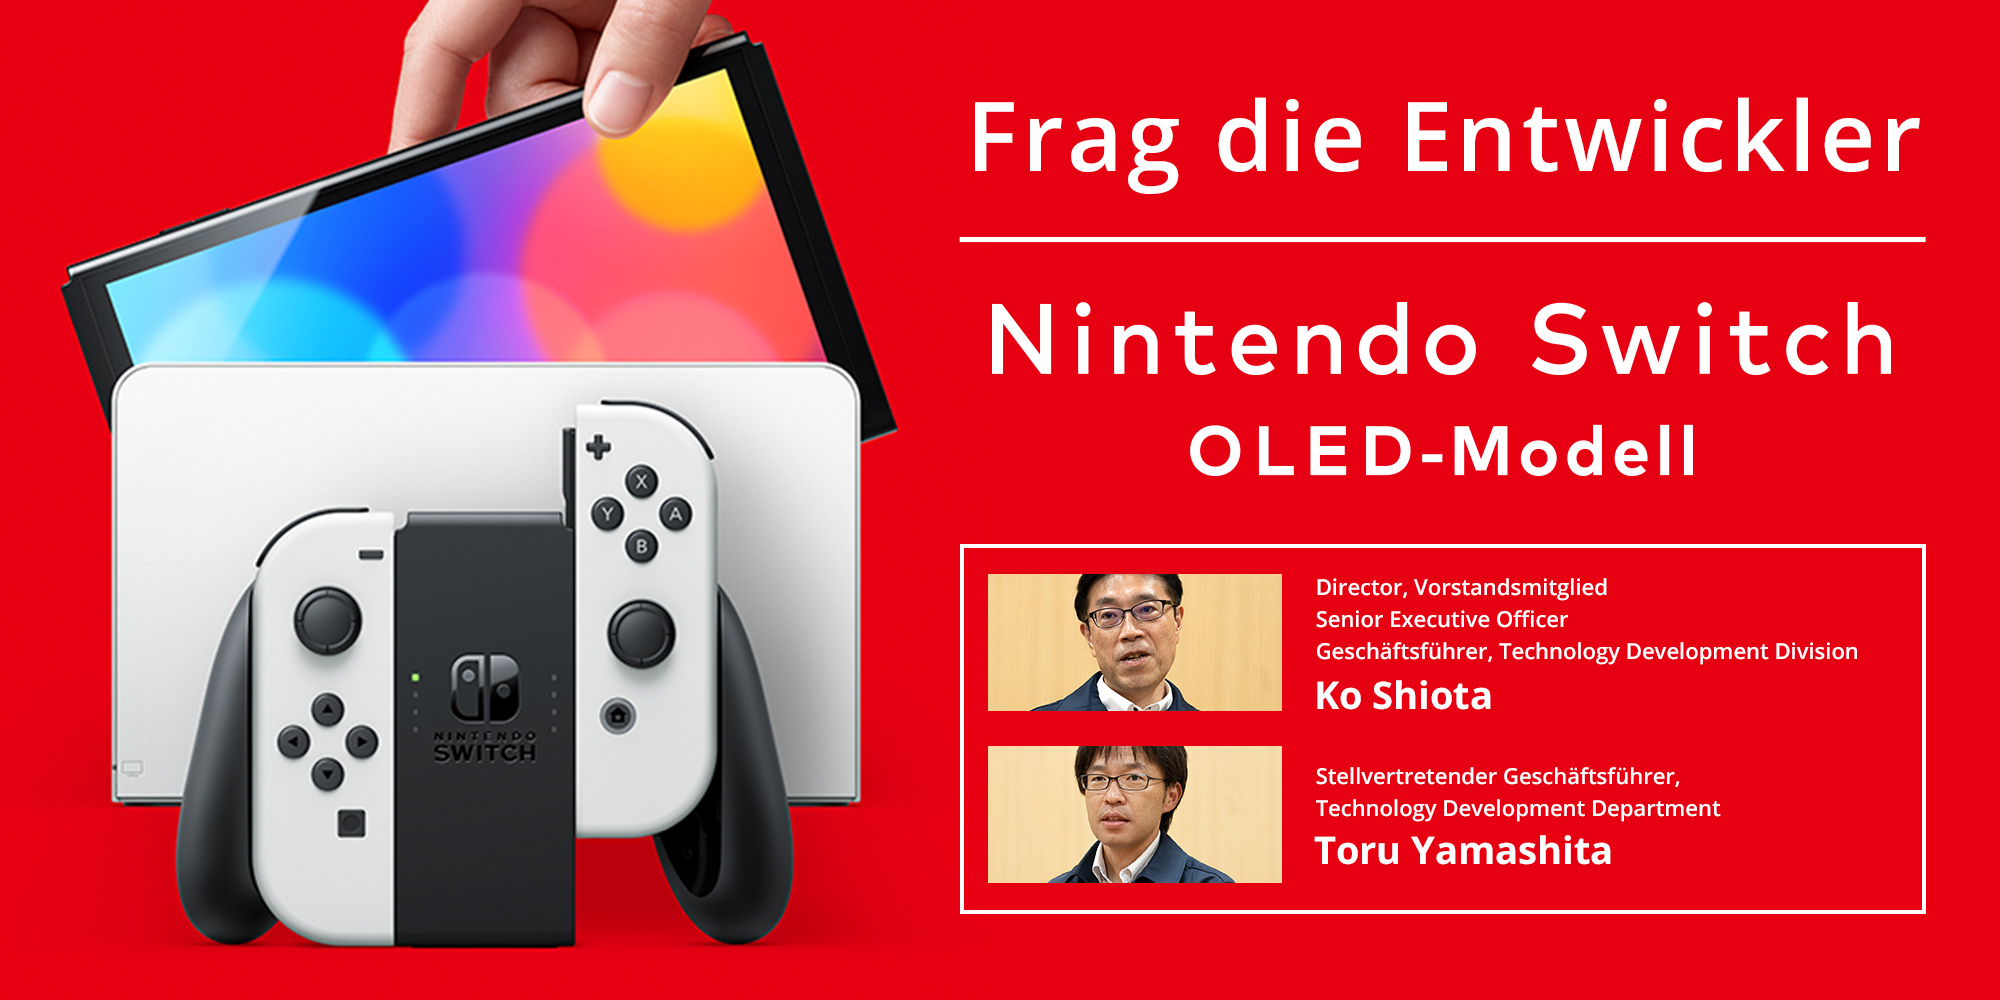 Frag die Entwickler, Teil 2: Nintendo Switch – OLED-Modell